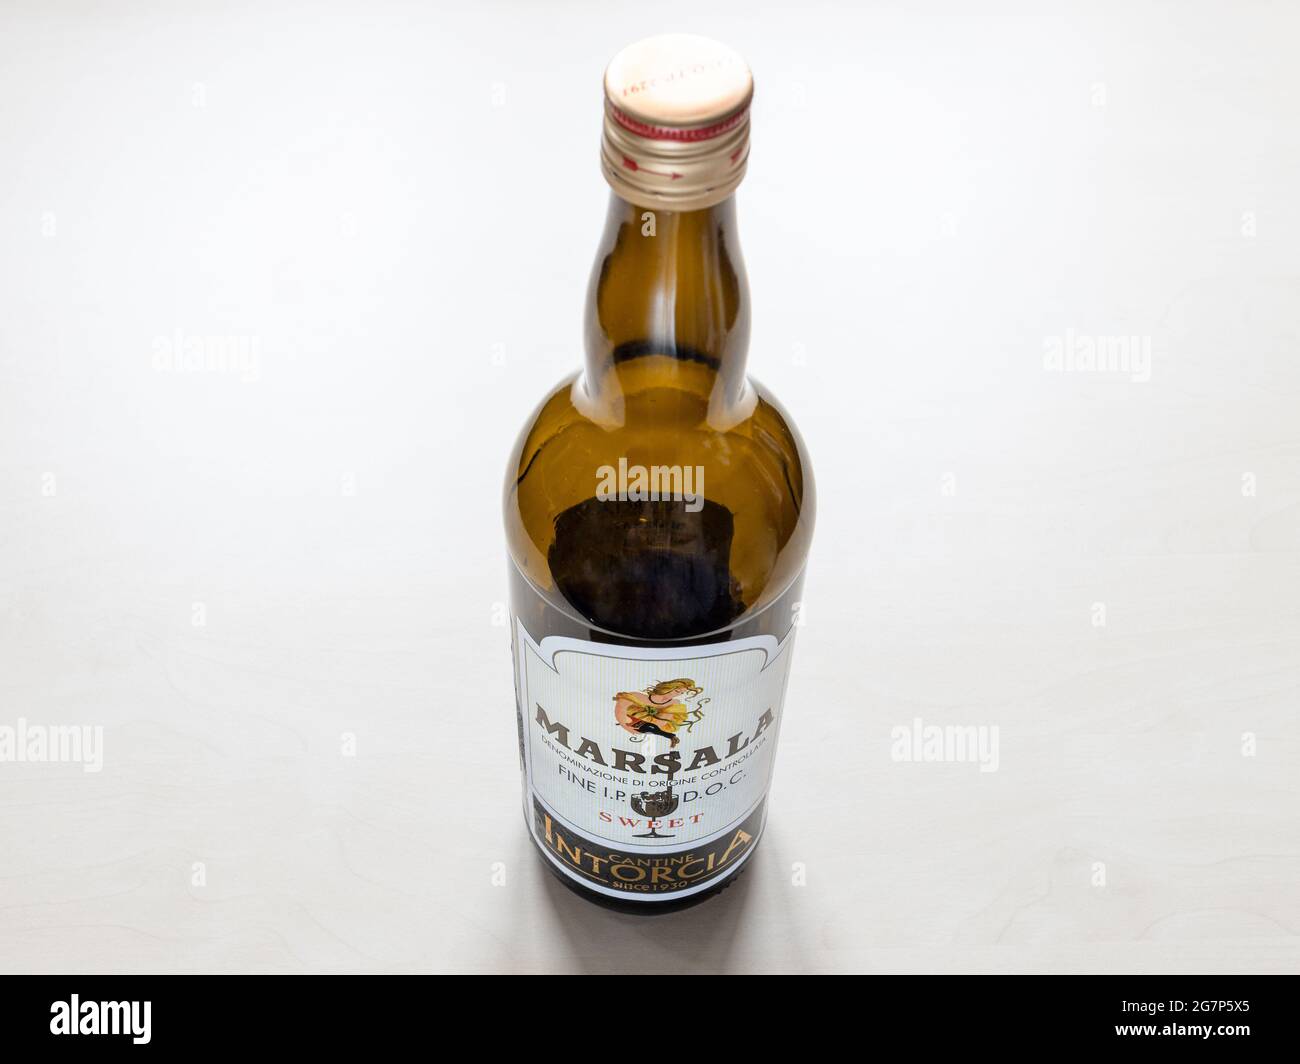 MOSKAU, RUSSLAND - 10. JUNI 2021: Leere Flasche süßer Marsala von Cantine Intorcia. Der Marsala ist ein angereicherter Wein, der in der Umgebung von hergestellt wird Stockfoto